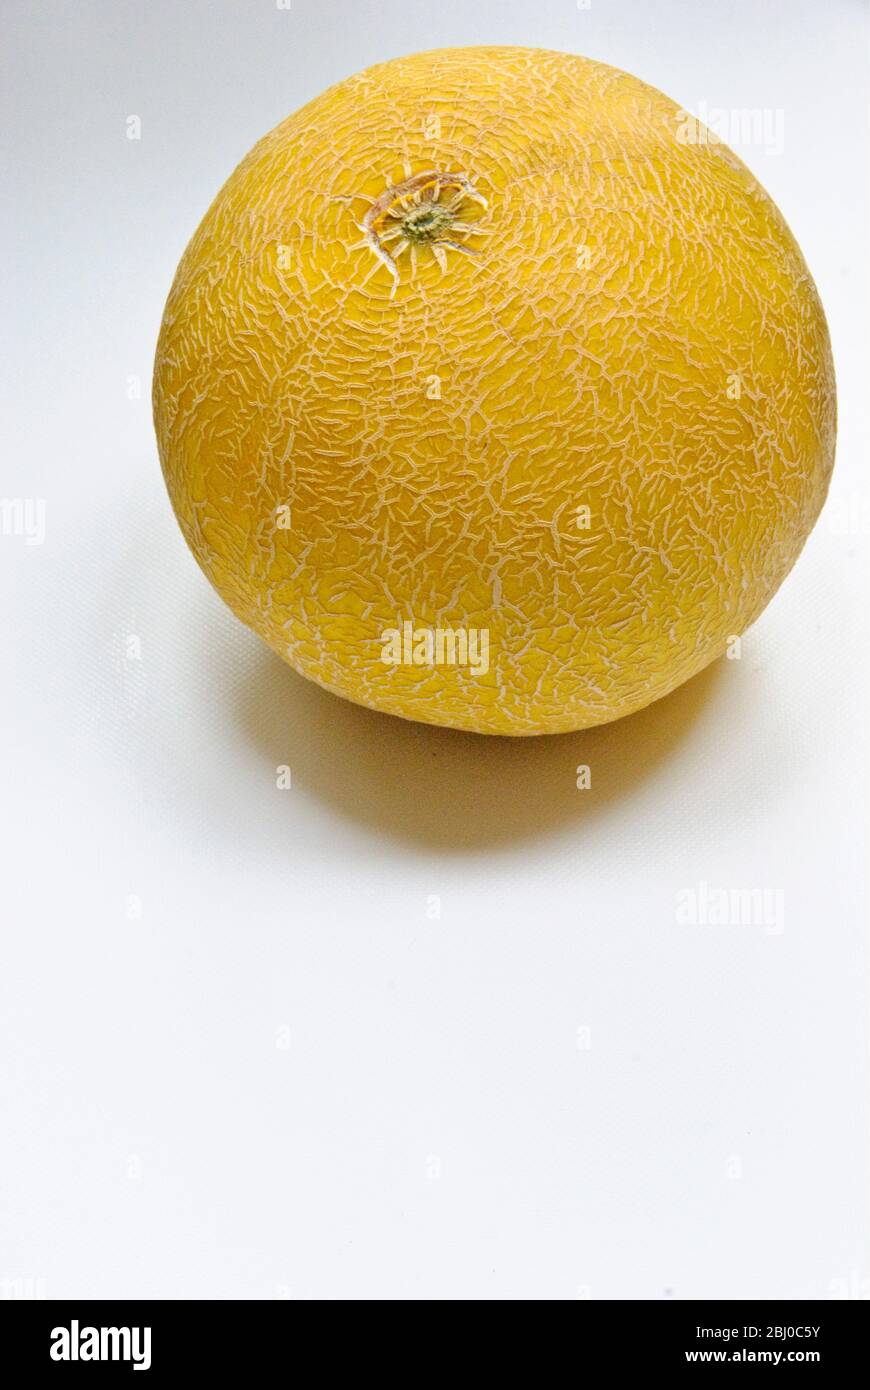 Whole gallia melon on white surface - Stock Photo